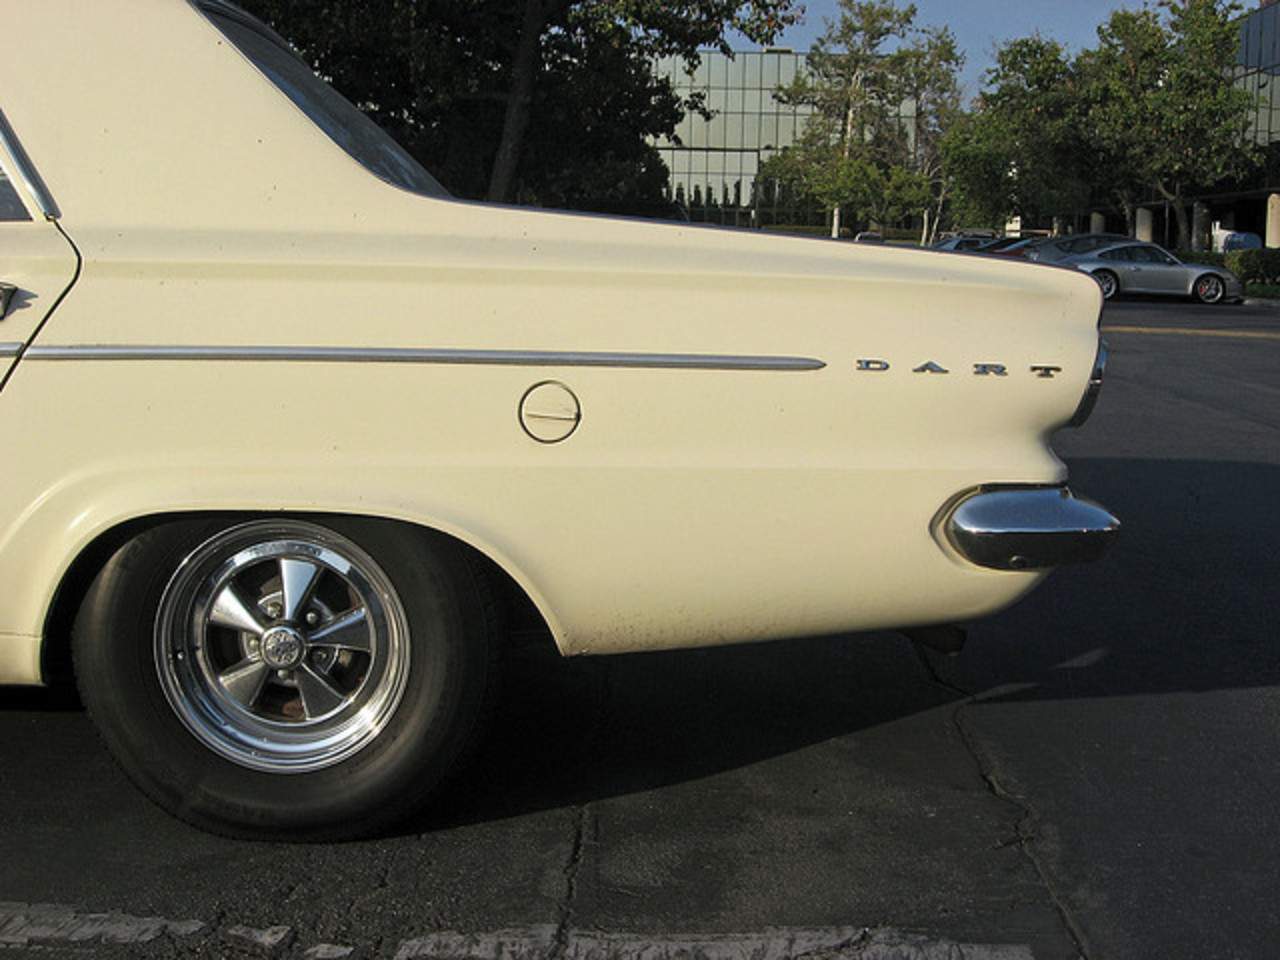 Queue de berline Dodge Dart 1965 / Flickr - Partage de photos!